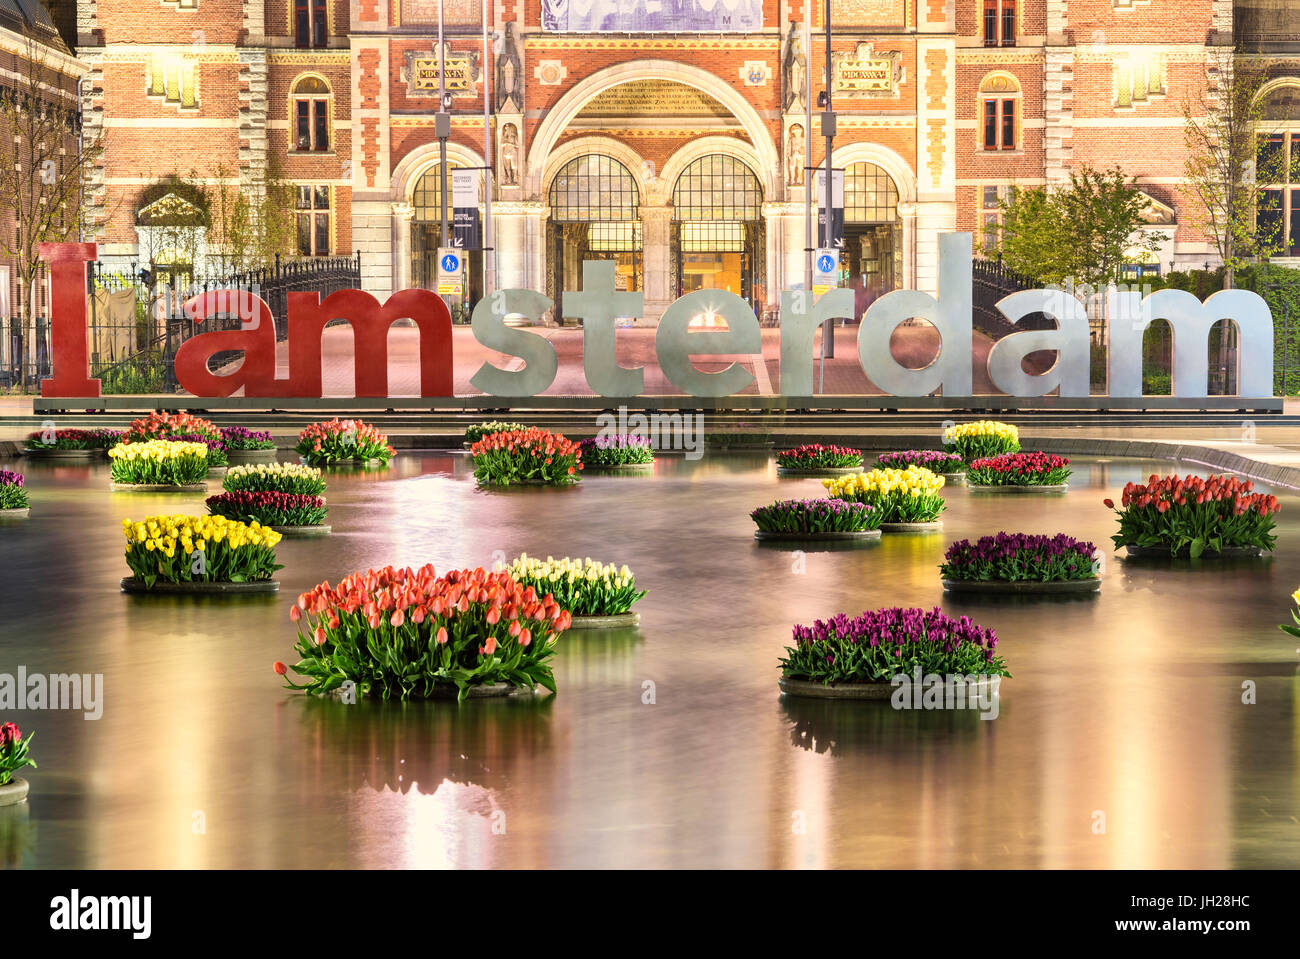 La National Rijksmuseum encadrée par des vases de fleurs flottant dans l'eau, Amsterdam, Hollande, Pays-Bas, Europe Banque D'Images